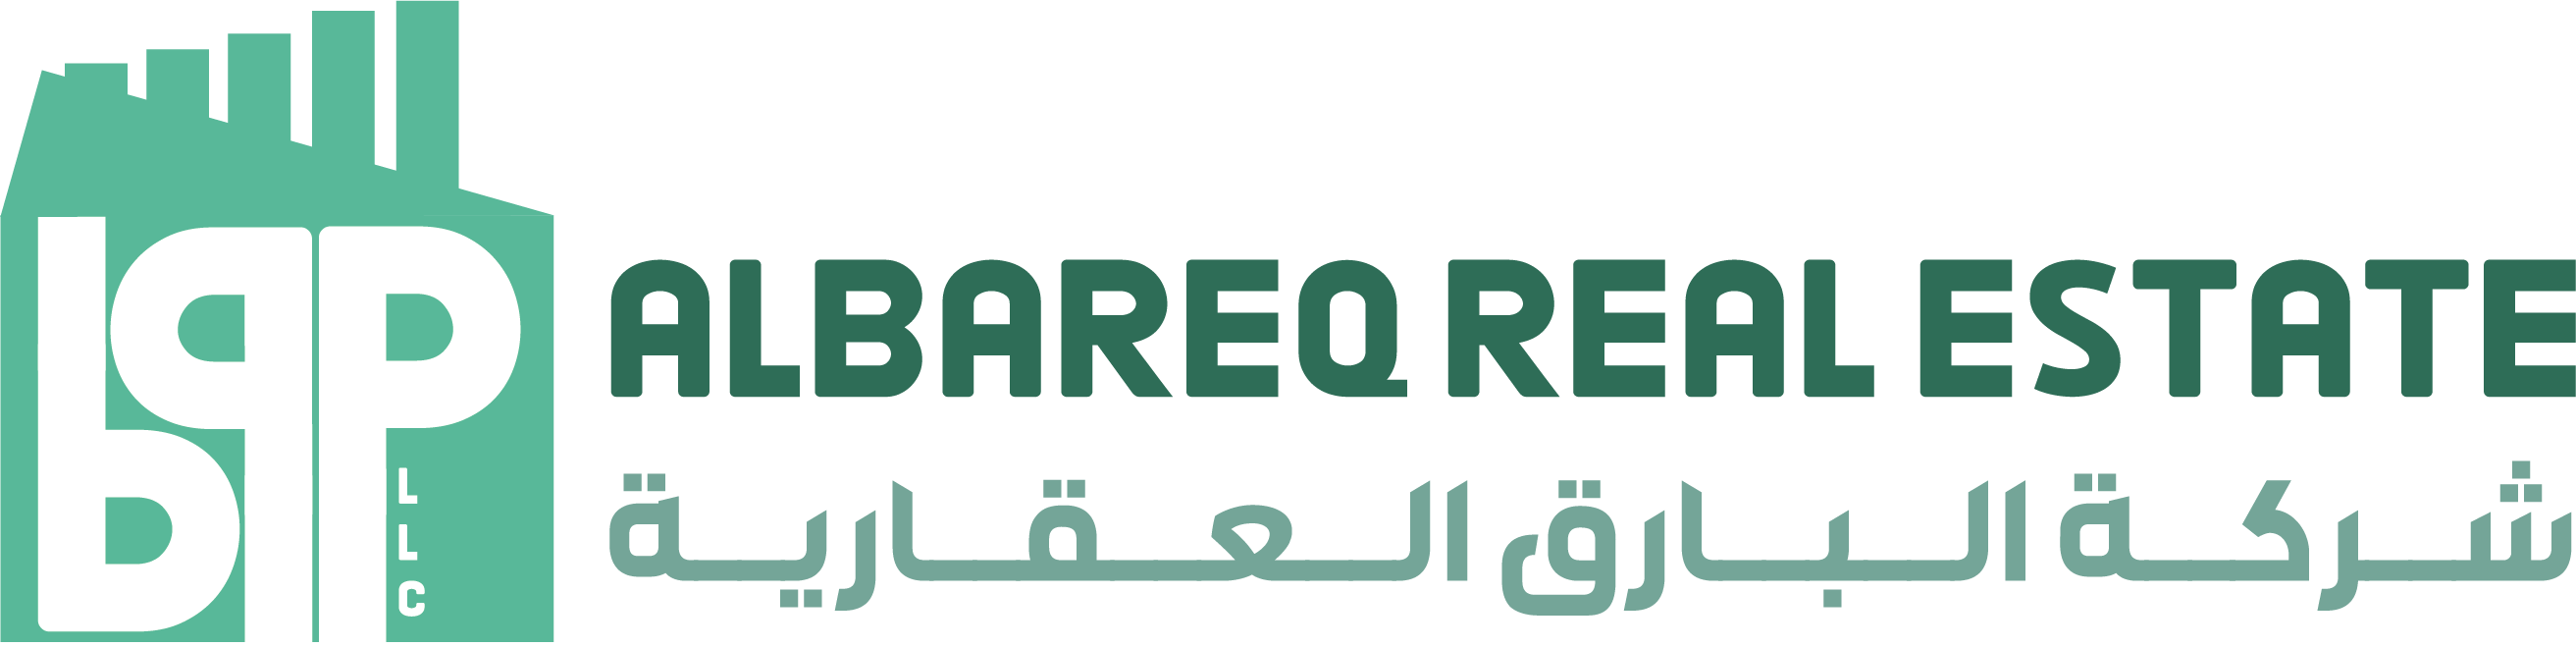 شركة البارق العقارية - Albareq Real Estate L.L.C